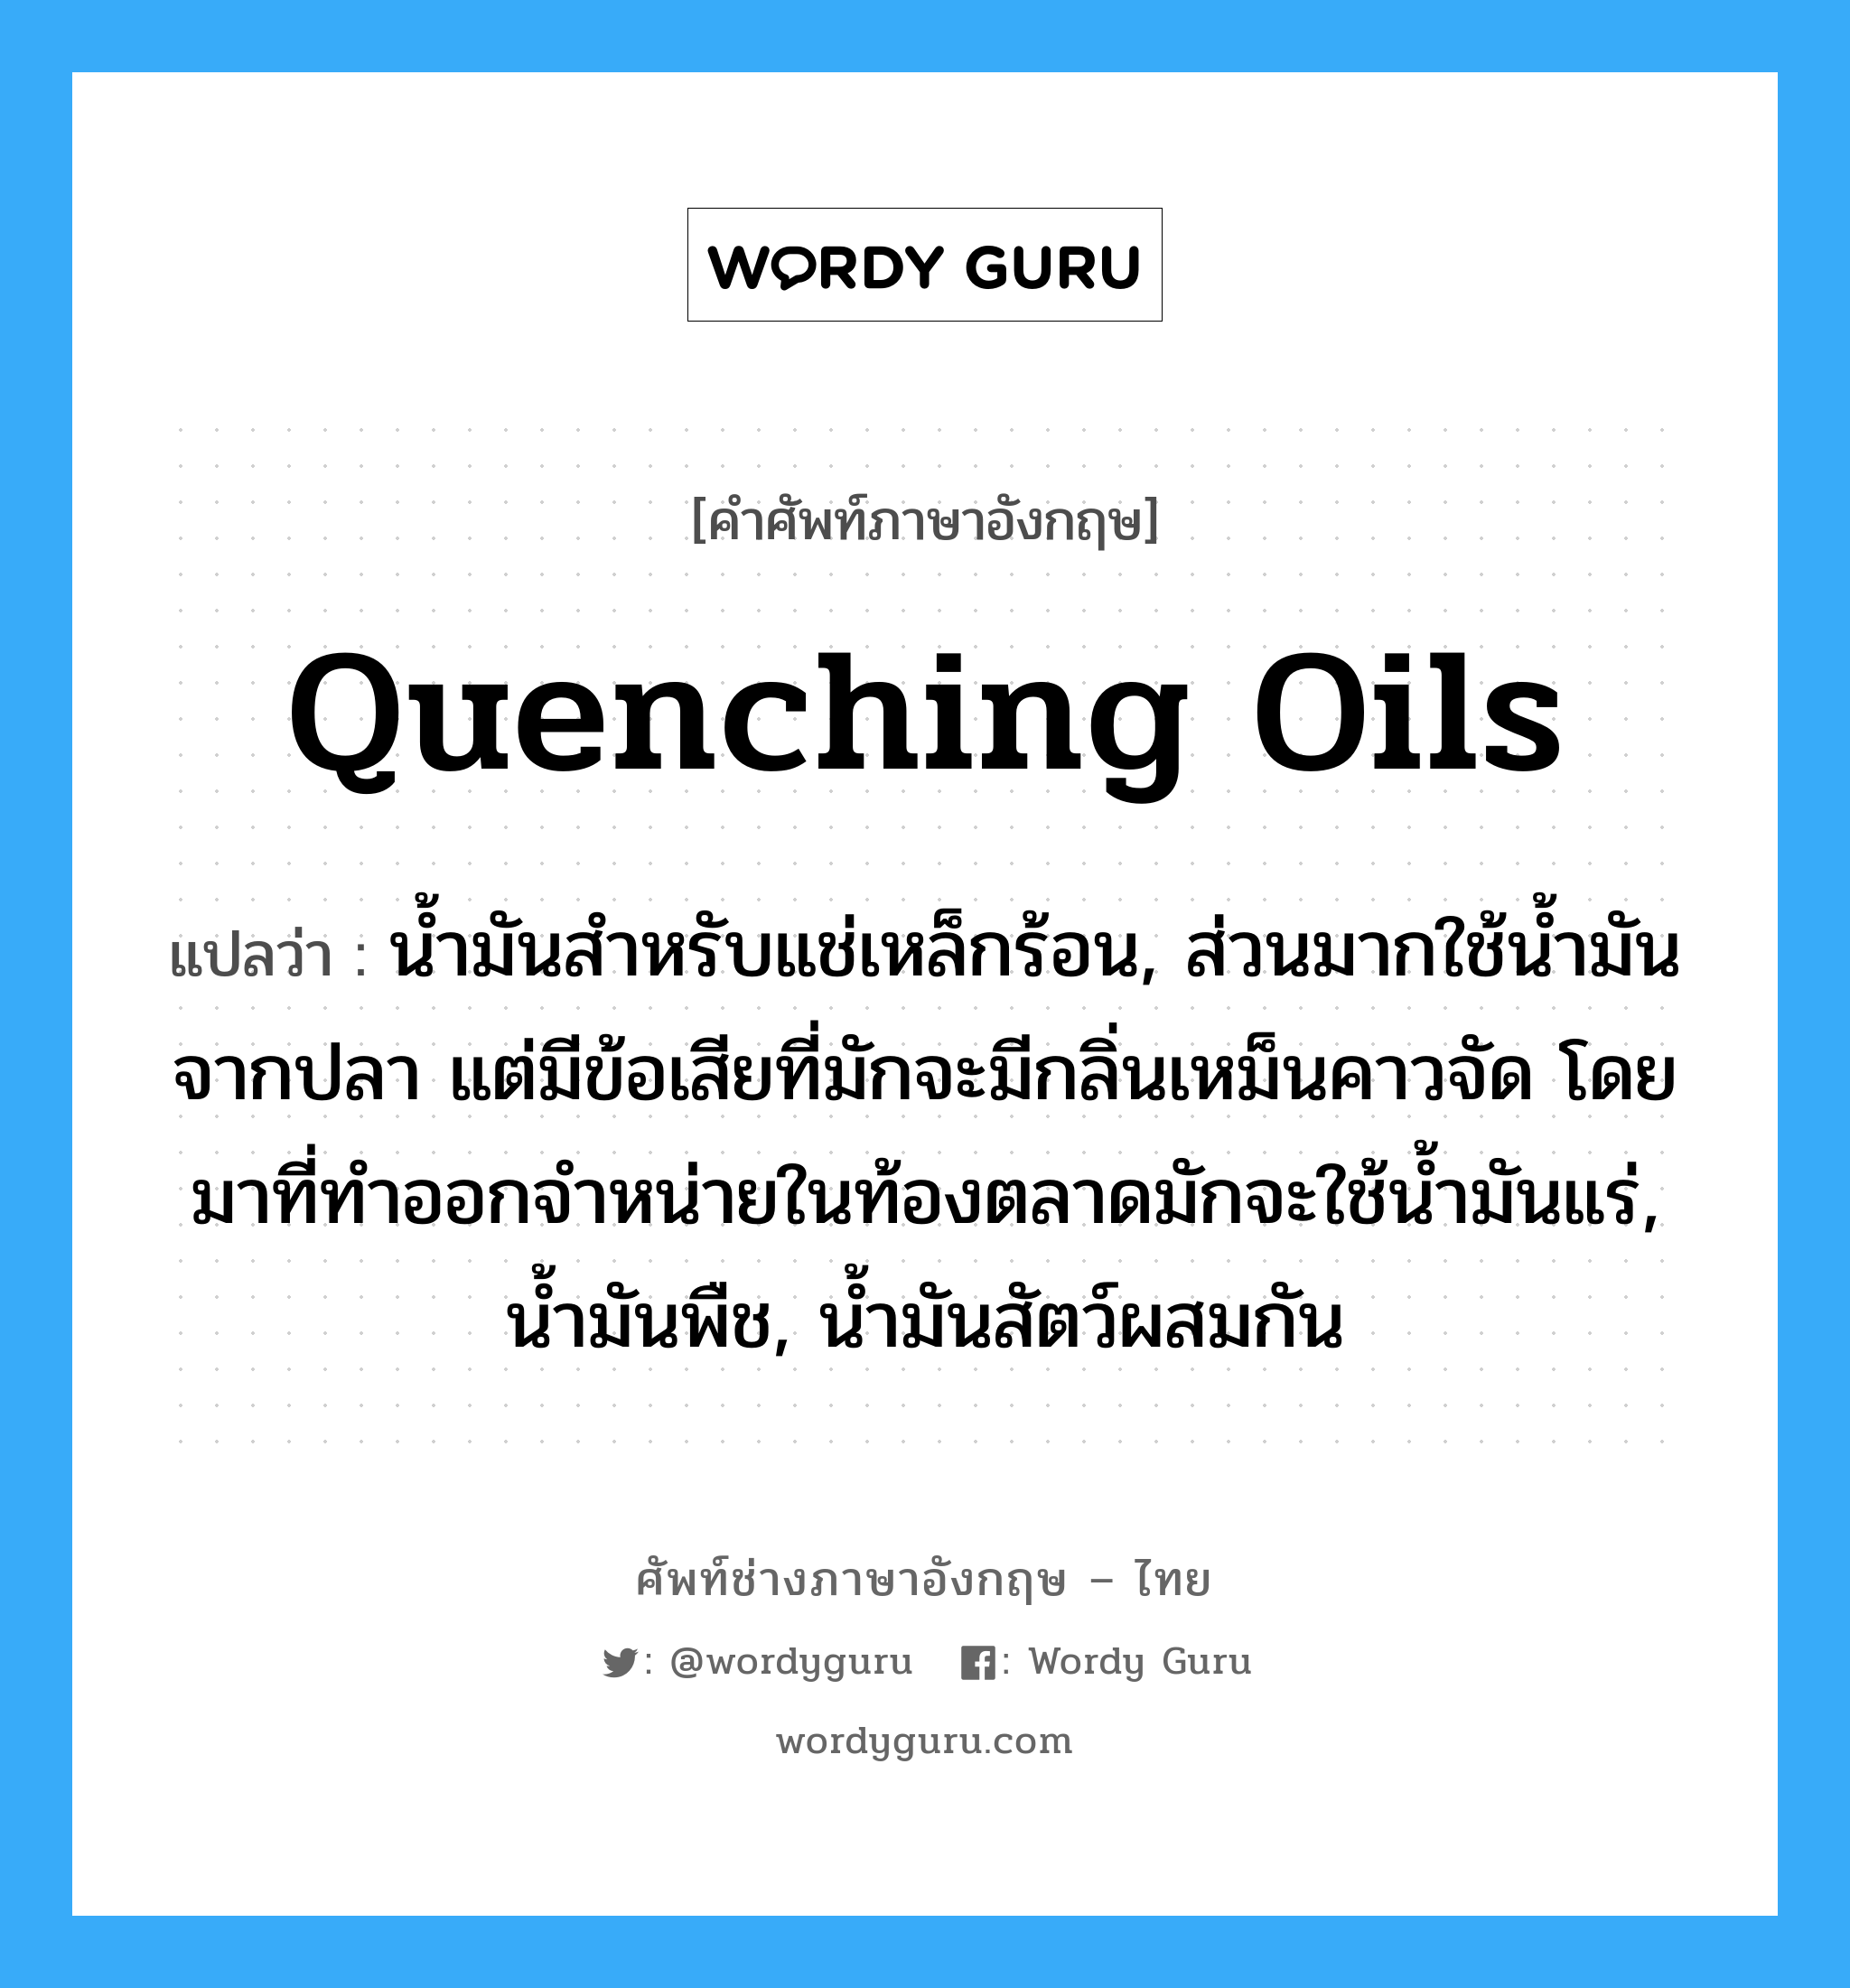 quenching oils แปลว่า?, คำศัพท์ช่างภาษาอังกฤษ - ไทย quenching oils คำศัพท์ภาษาอังกฤษ quenching oils แปลว่า น้ำมันสำหรับแช่เหล็กร้อน, ส่วนมากใช้น้ำมันจากปลา แต่มีข้อเสียที่มักจะมีกลิ่นเหม็นคาวจัด โดยมาที่ทำออกจำหน่ายในท้องตลาดมักจะใช้น้ำมันแร่, น้ำมันพืช, น้ำมันสัตว์ผสมกัน